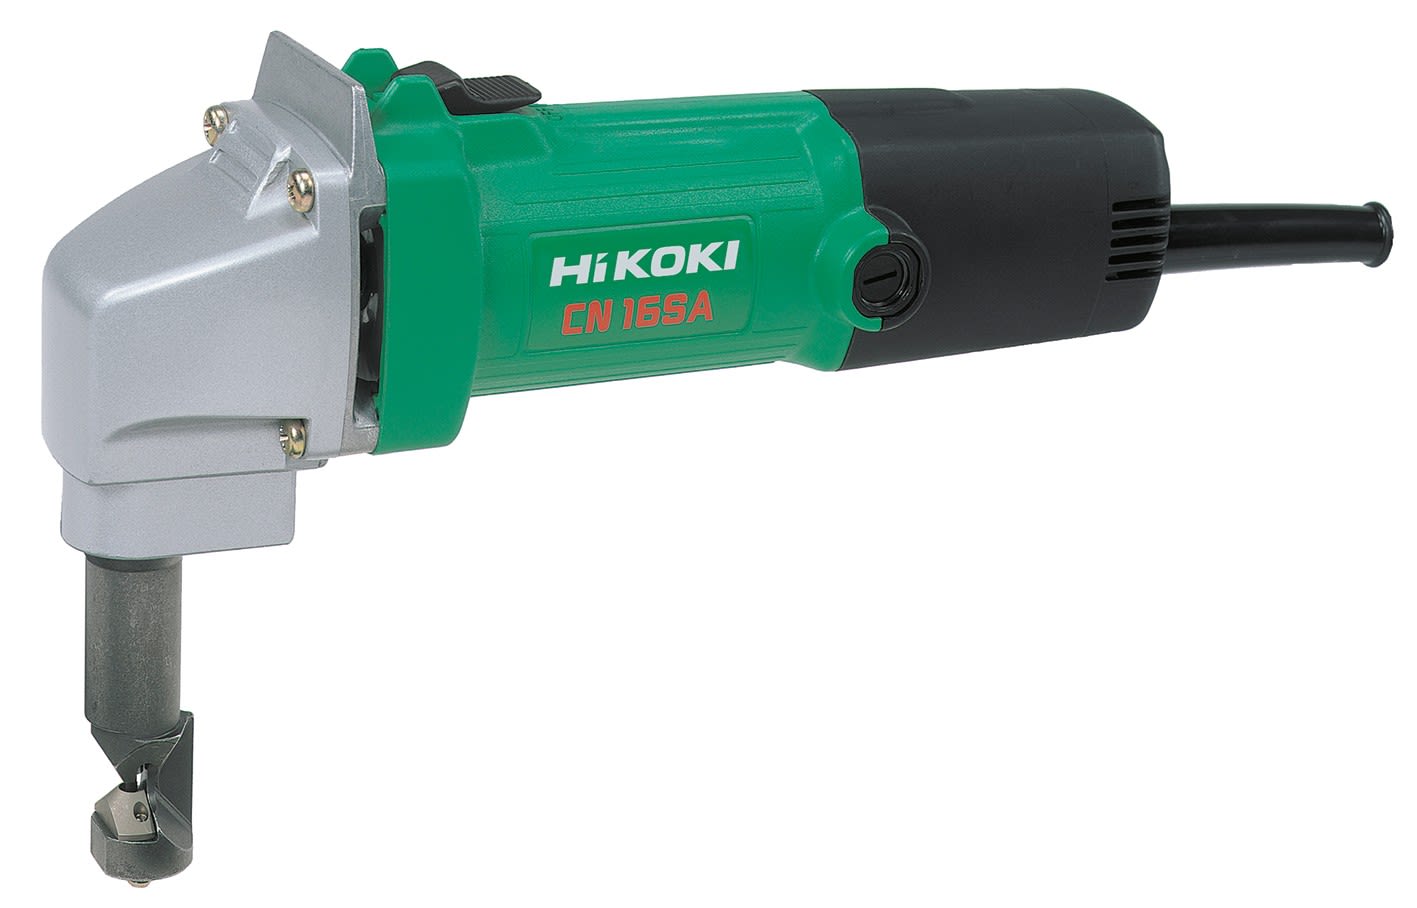 Hikoki Power Tools - Grignoteuse 400W, capacité acier 1.6mm, alu 2,3mm, largeur cpe 5mm, rayon 40mm